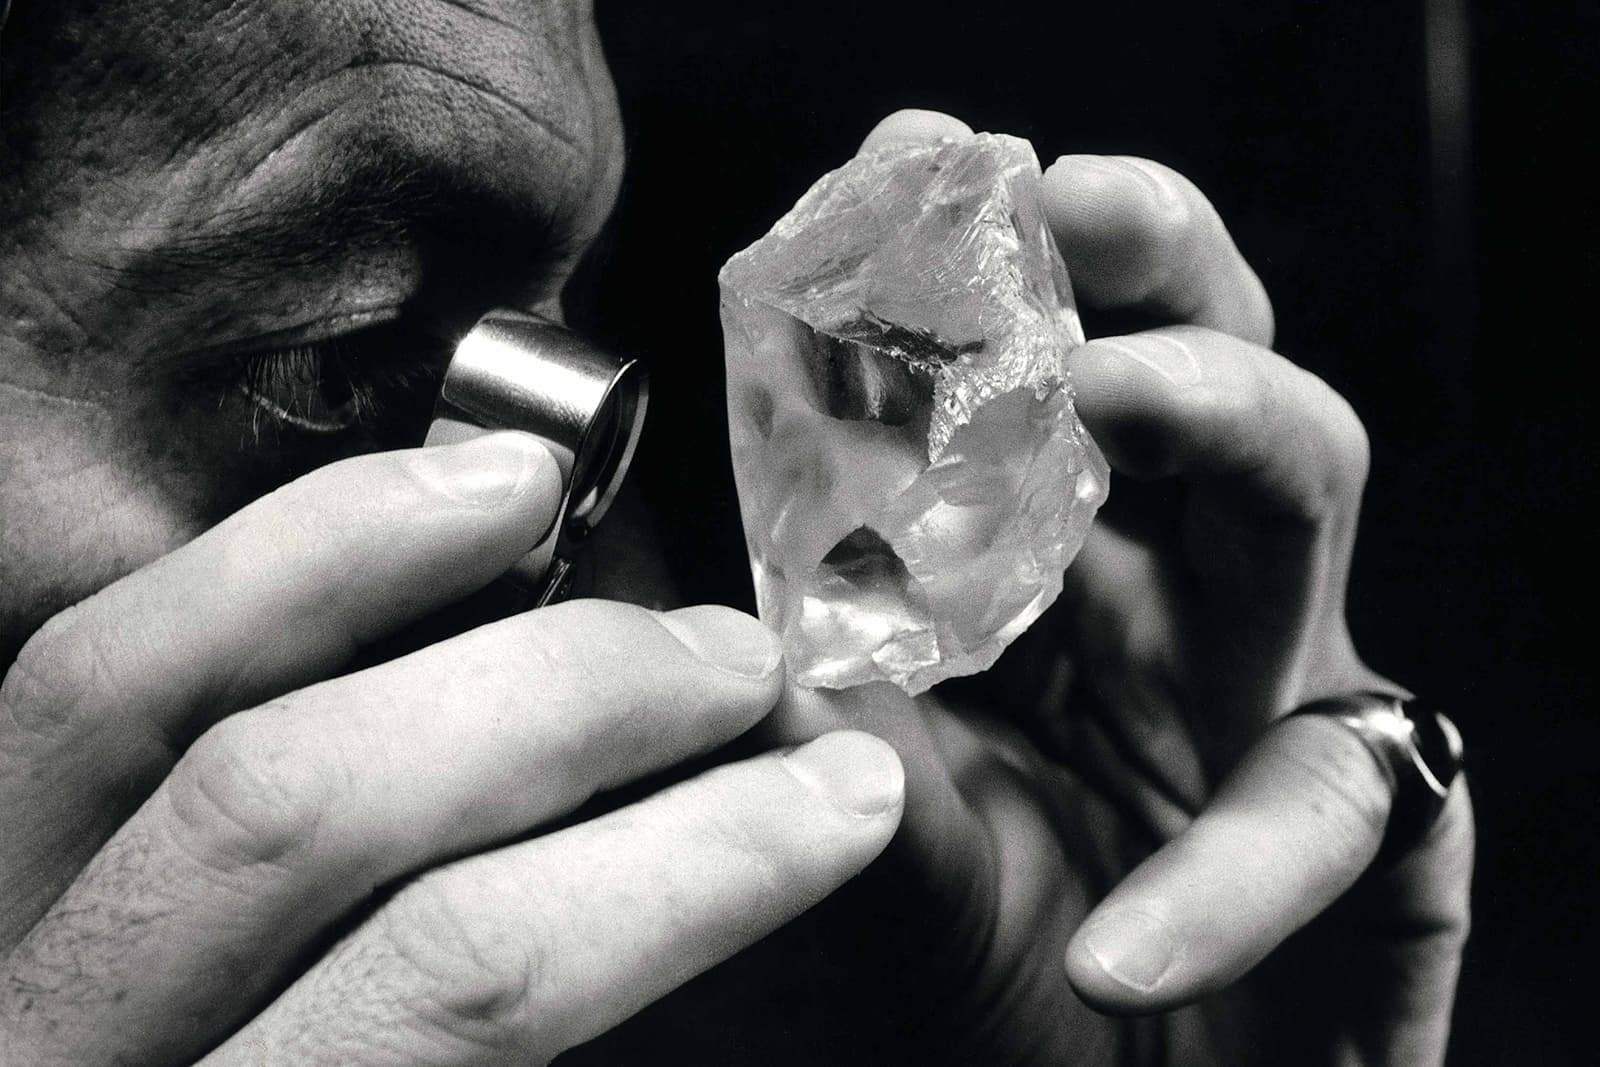 В 2006 году Лоуренс Графф приобрел крайне редкий сырьевой алмаз весом 603ct, найденный в южноафриканском Королевстве Лесото 